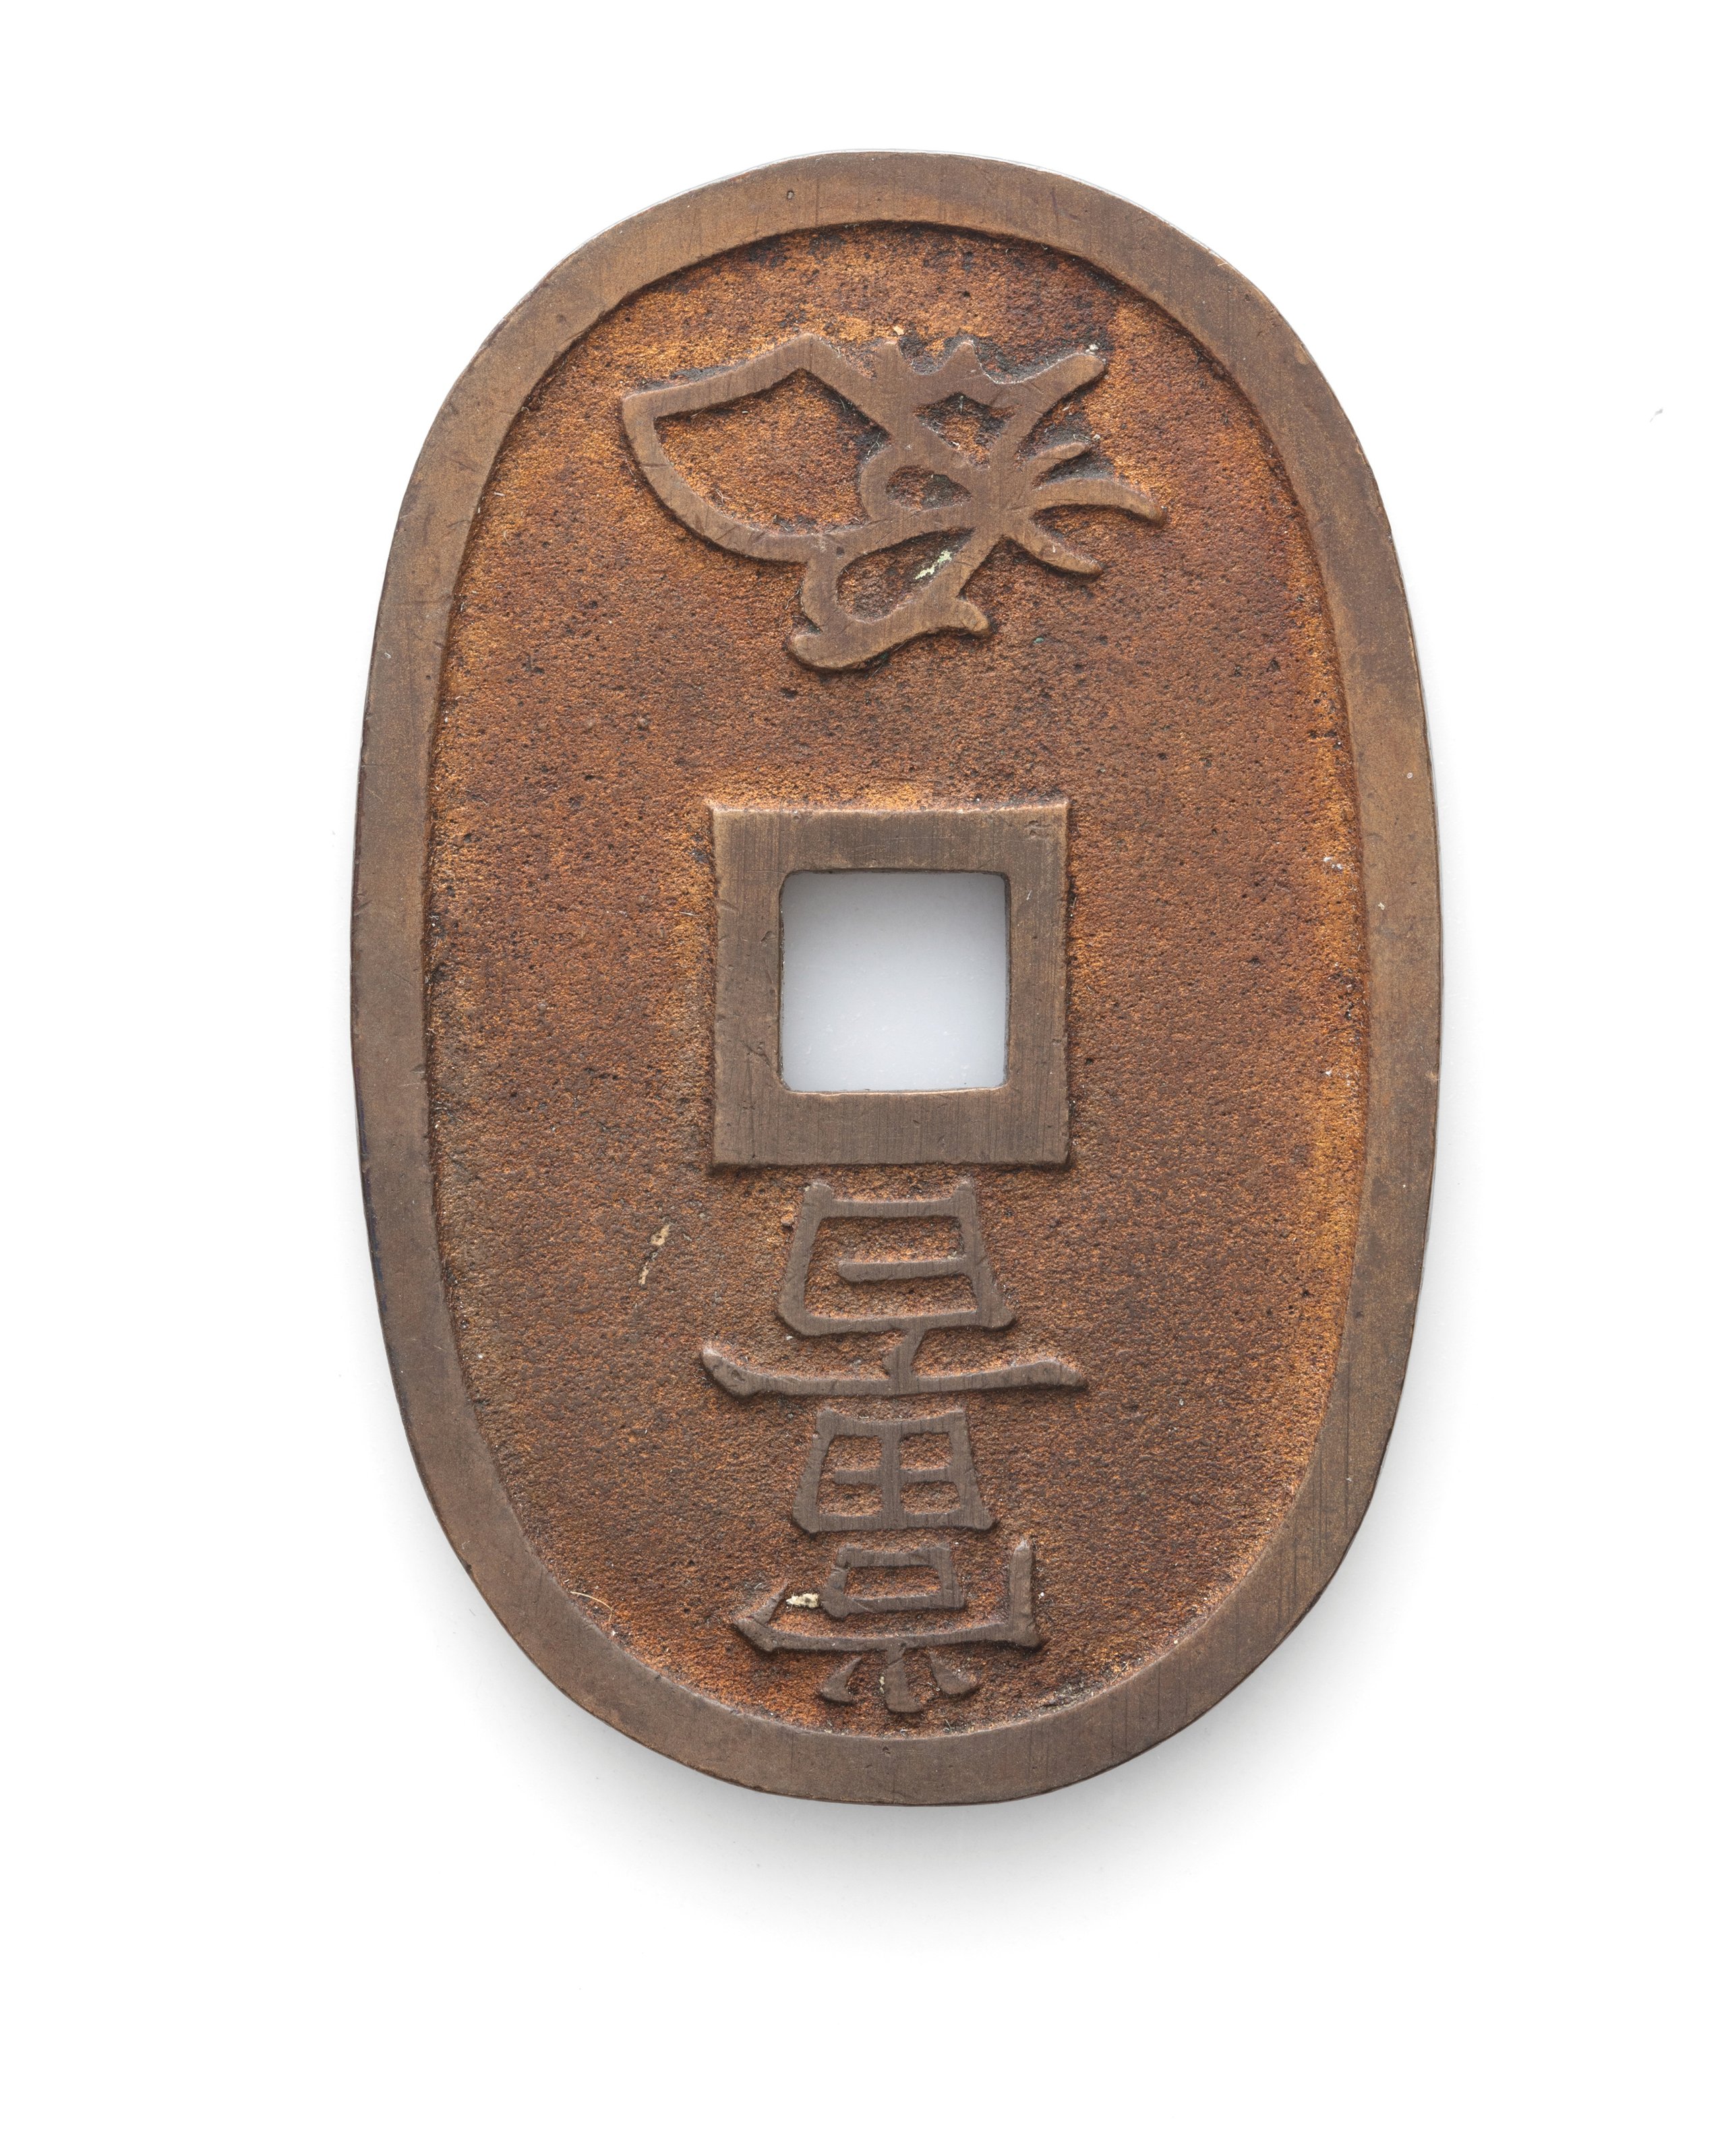 Japanese One Hundred Mon coin